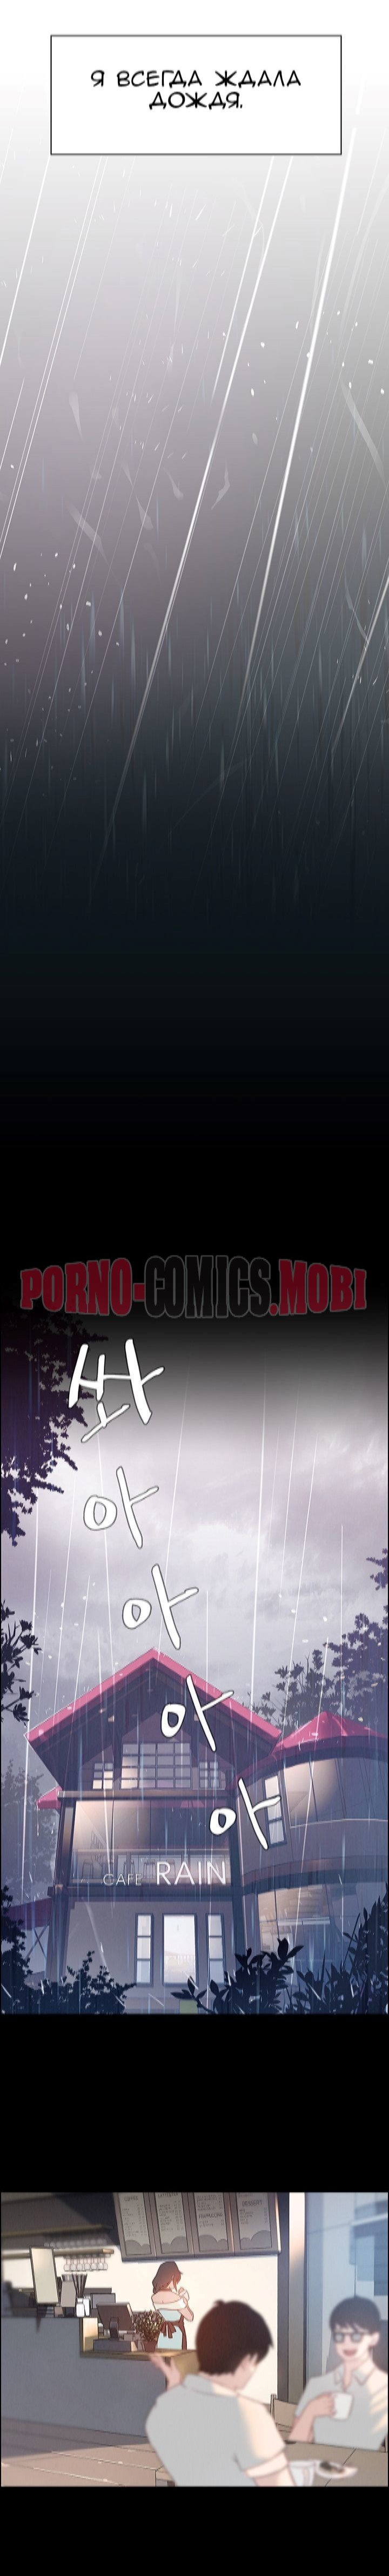 Порно Комикс Занавес от дождя Часть 1-2 смотреть бесплатно онлайн